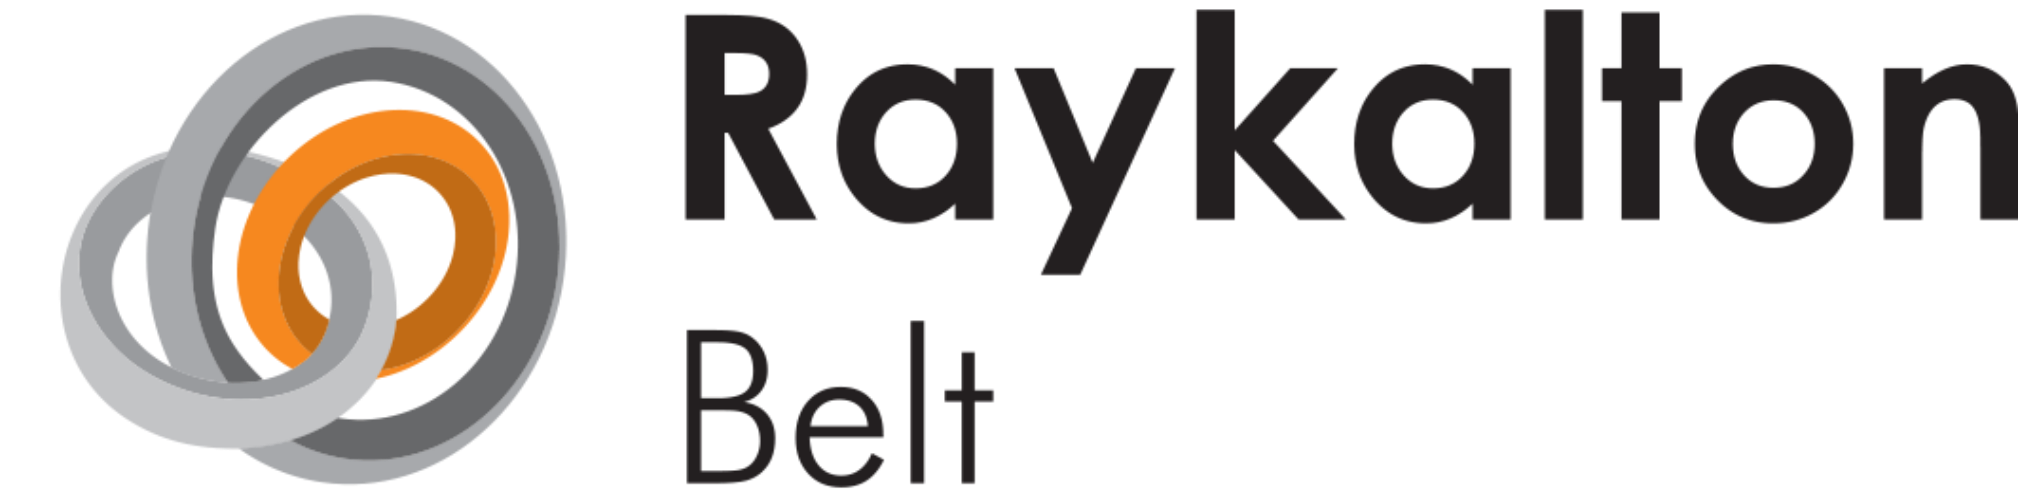 کد تخفیف رایکا آلتون تسمه - Raykalton Belt